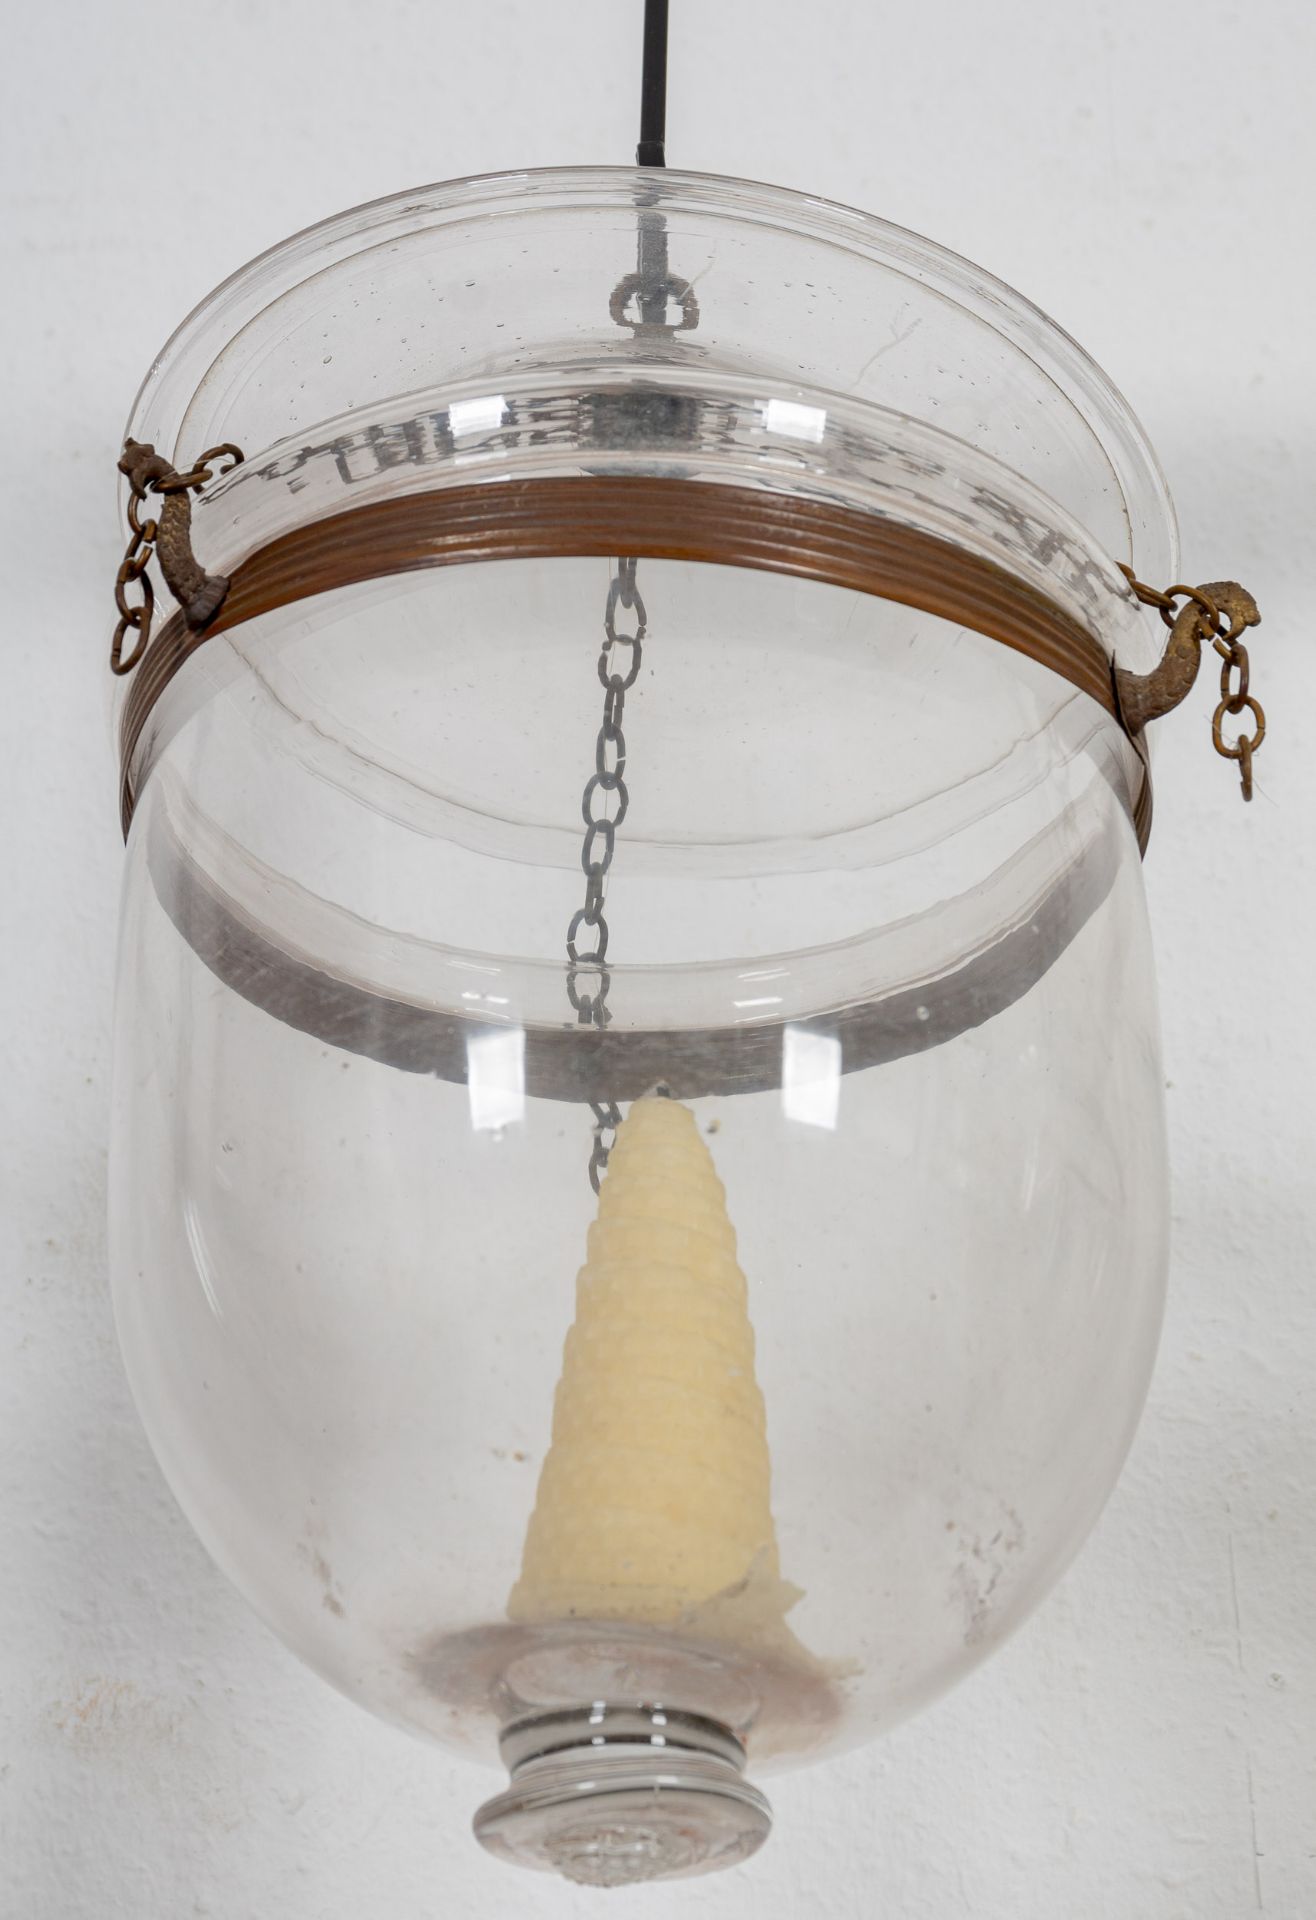 Antike Flurlampe für Kerzenfeuerung, zylindrischer, farbloser Glaskörper an metallischer Kettenaufh - Image 4 of 6